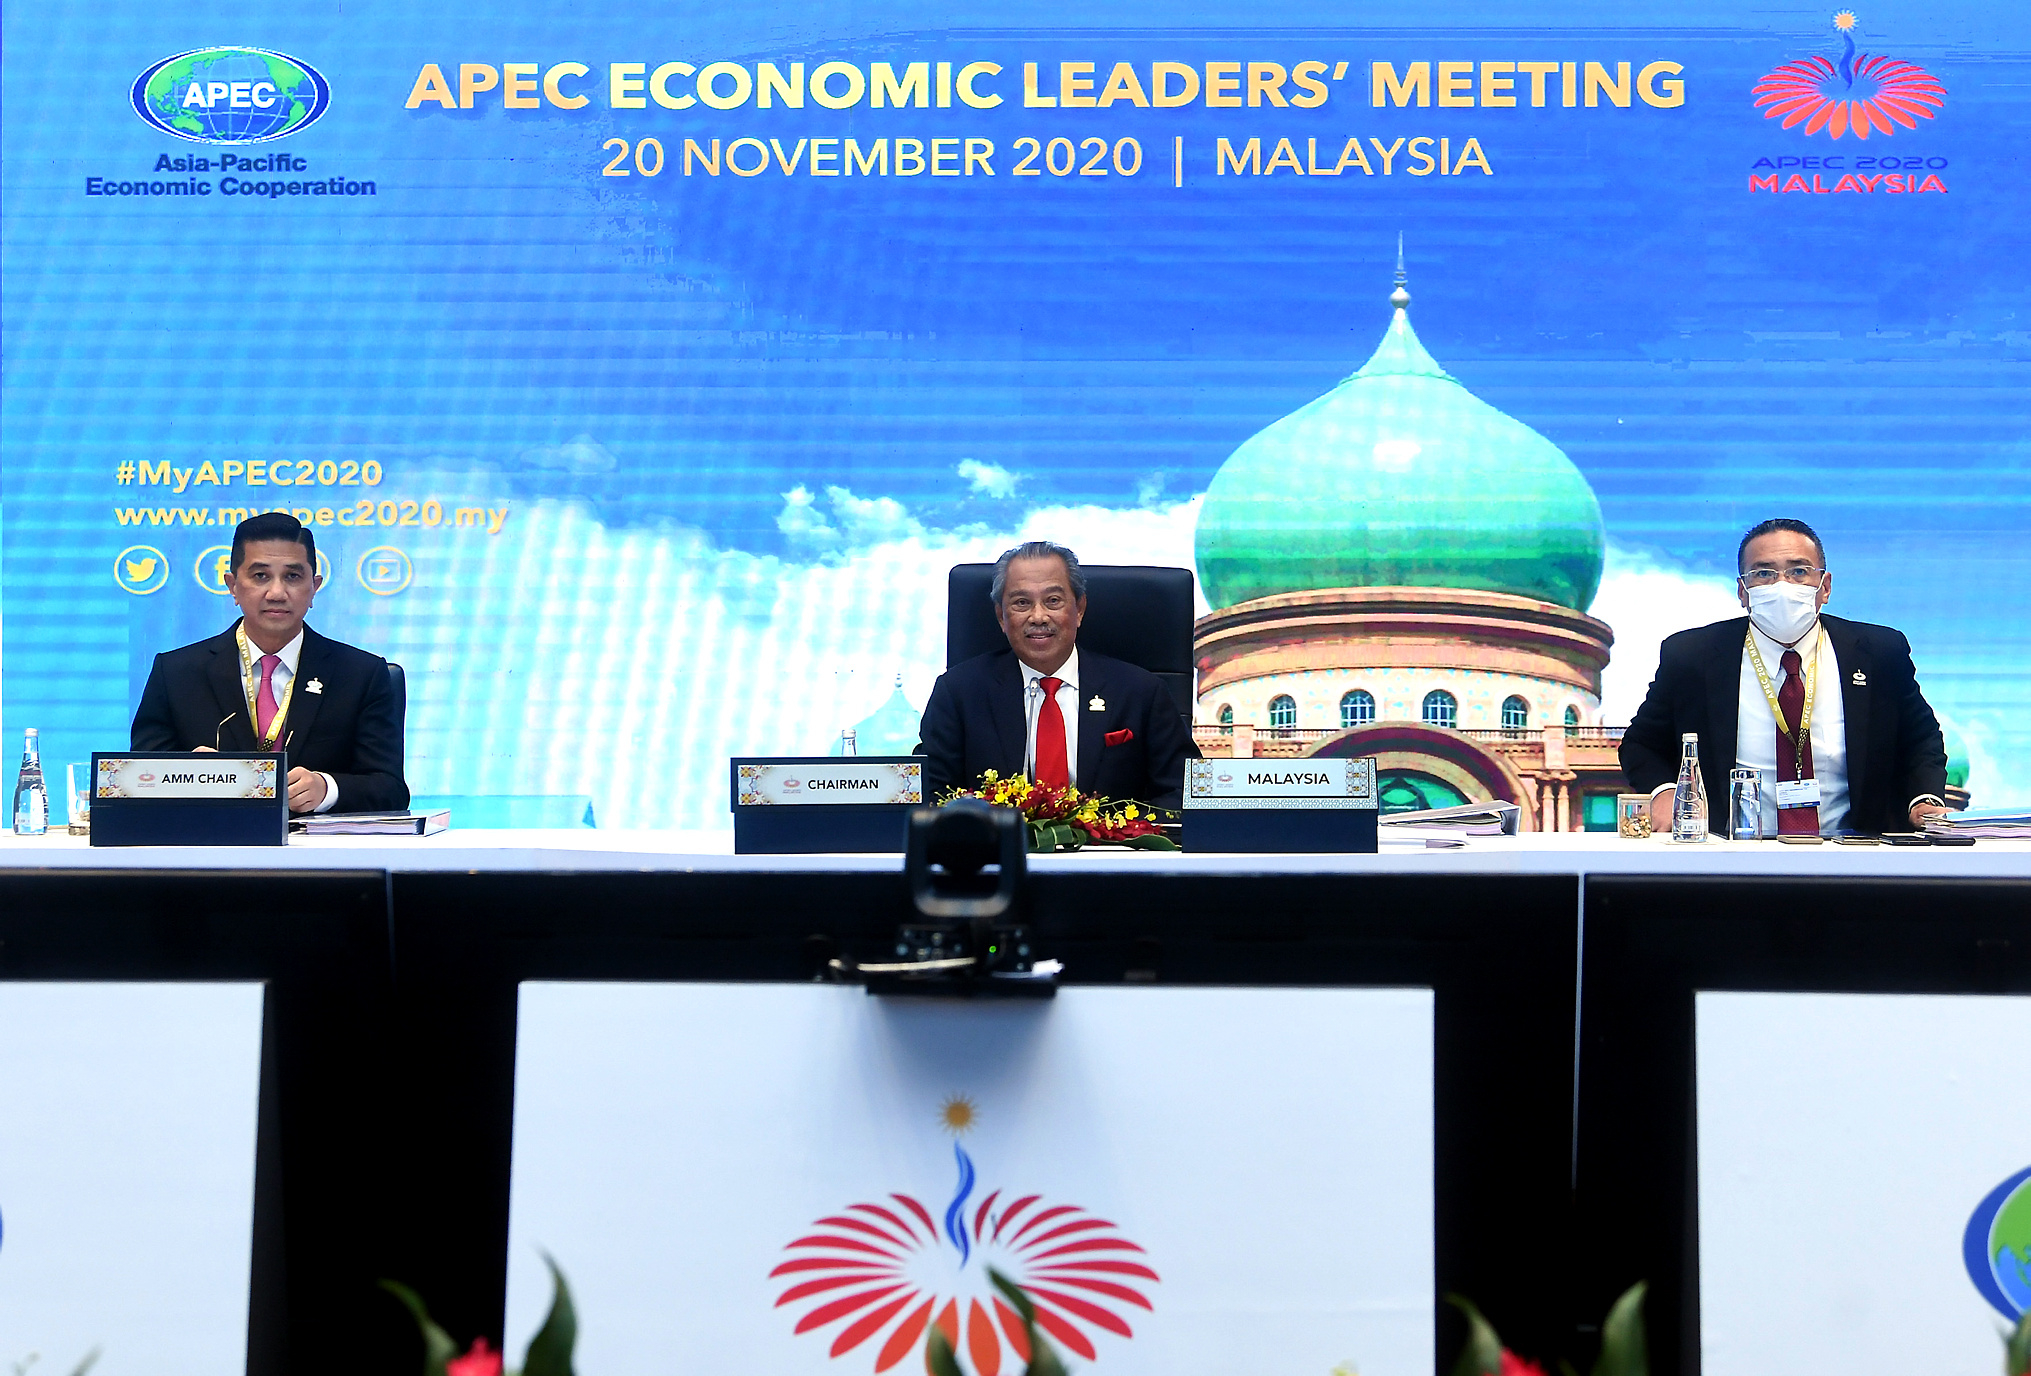 慕尤丁（中）呼吁APEC成员共同携手合作，以重建受到冠病疫情影响的经济；左为阿兹敏，右为希山慕丁。